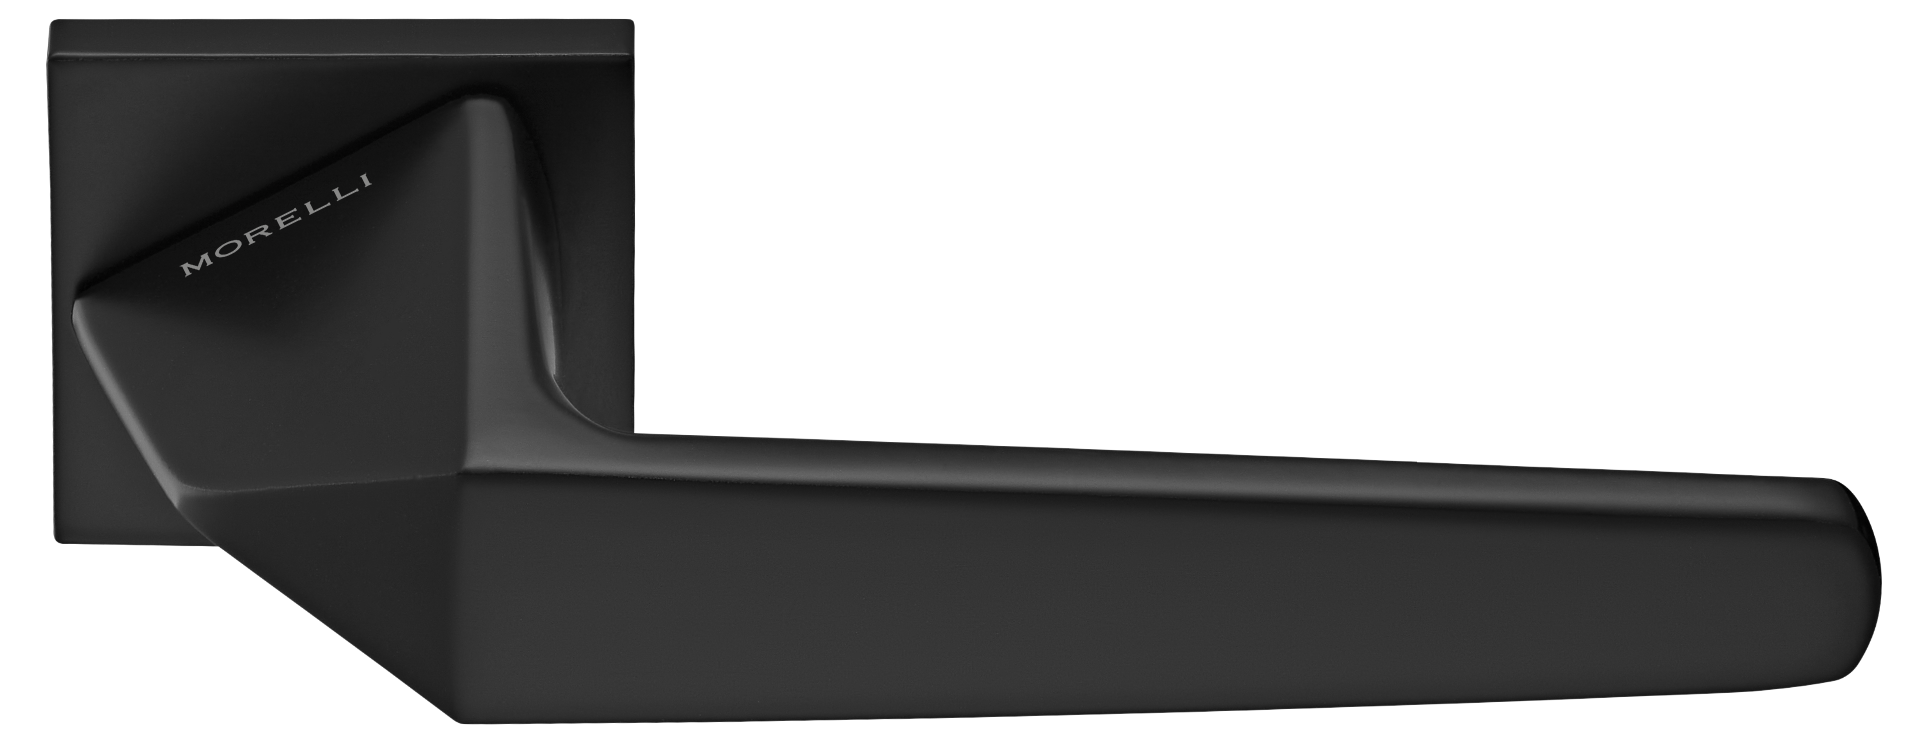 SOUK ручка дверная на квадратной розетке 6 мм, MH-55-S6 BL, цвет - черный фото купить Новокузнецк